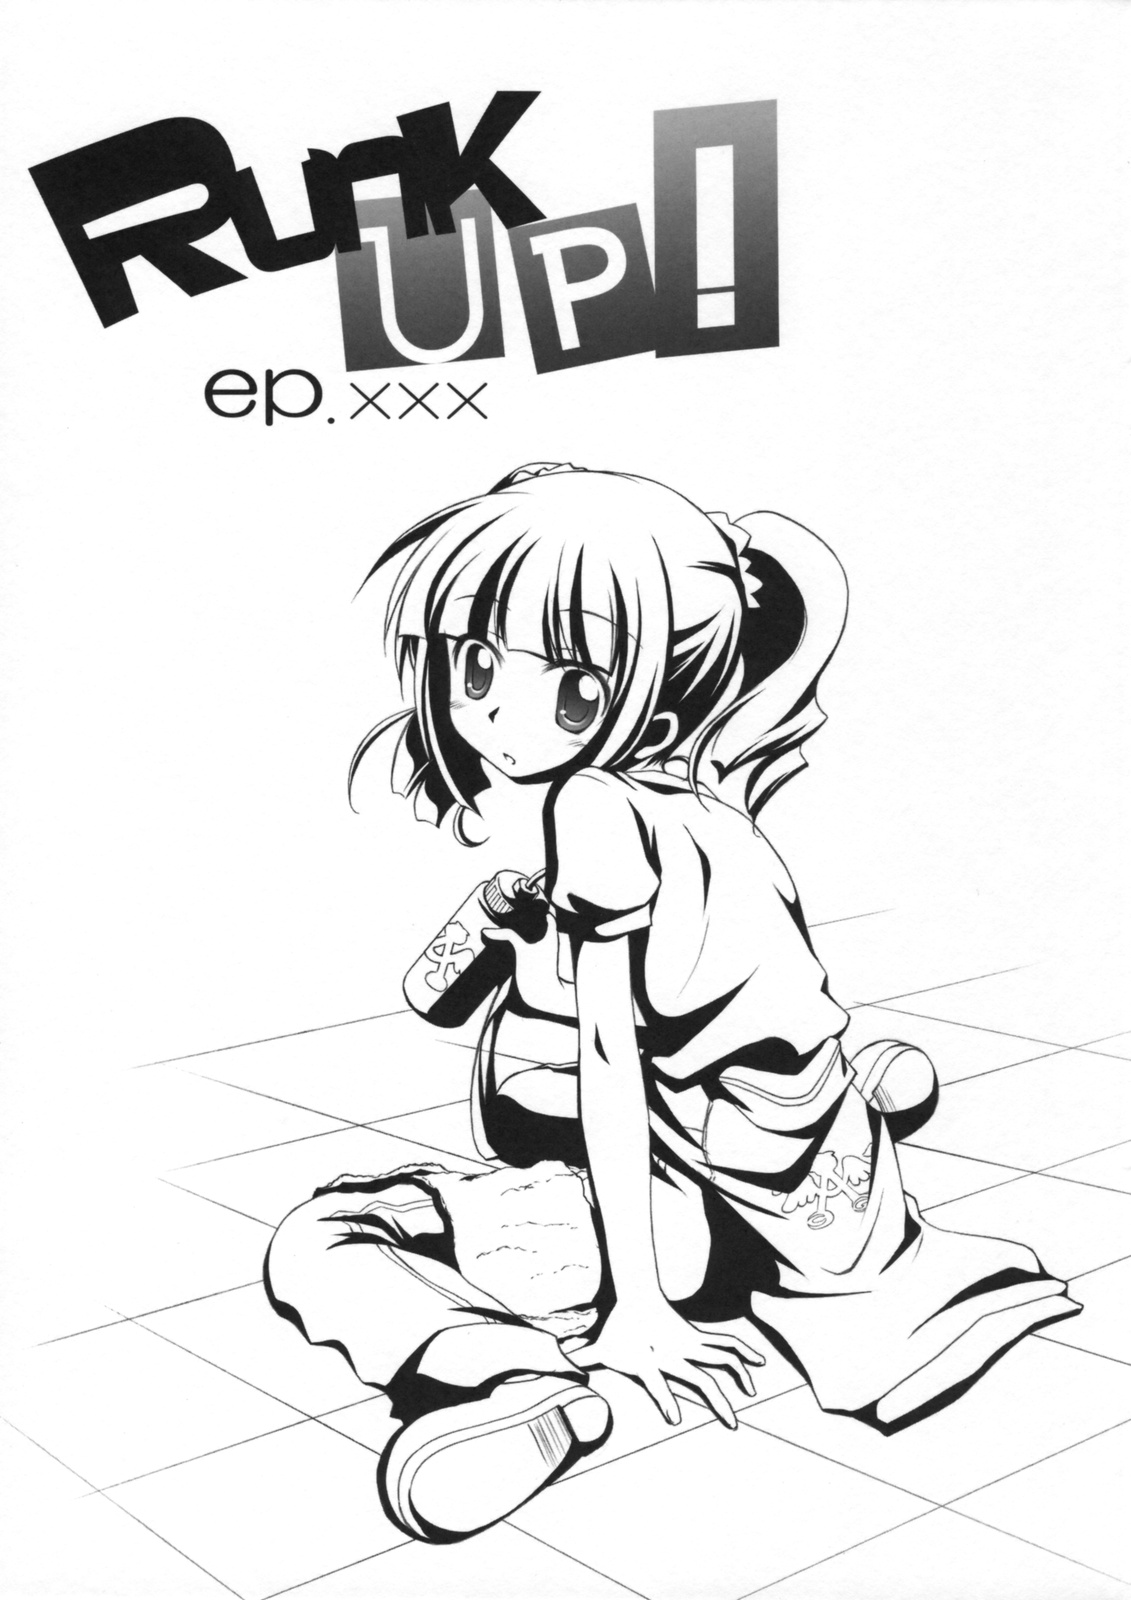 [千歳烏山第2出張所 (真未たつや)] Runk UP! ep.xxx (アイドルマスター)